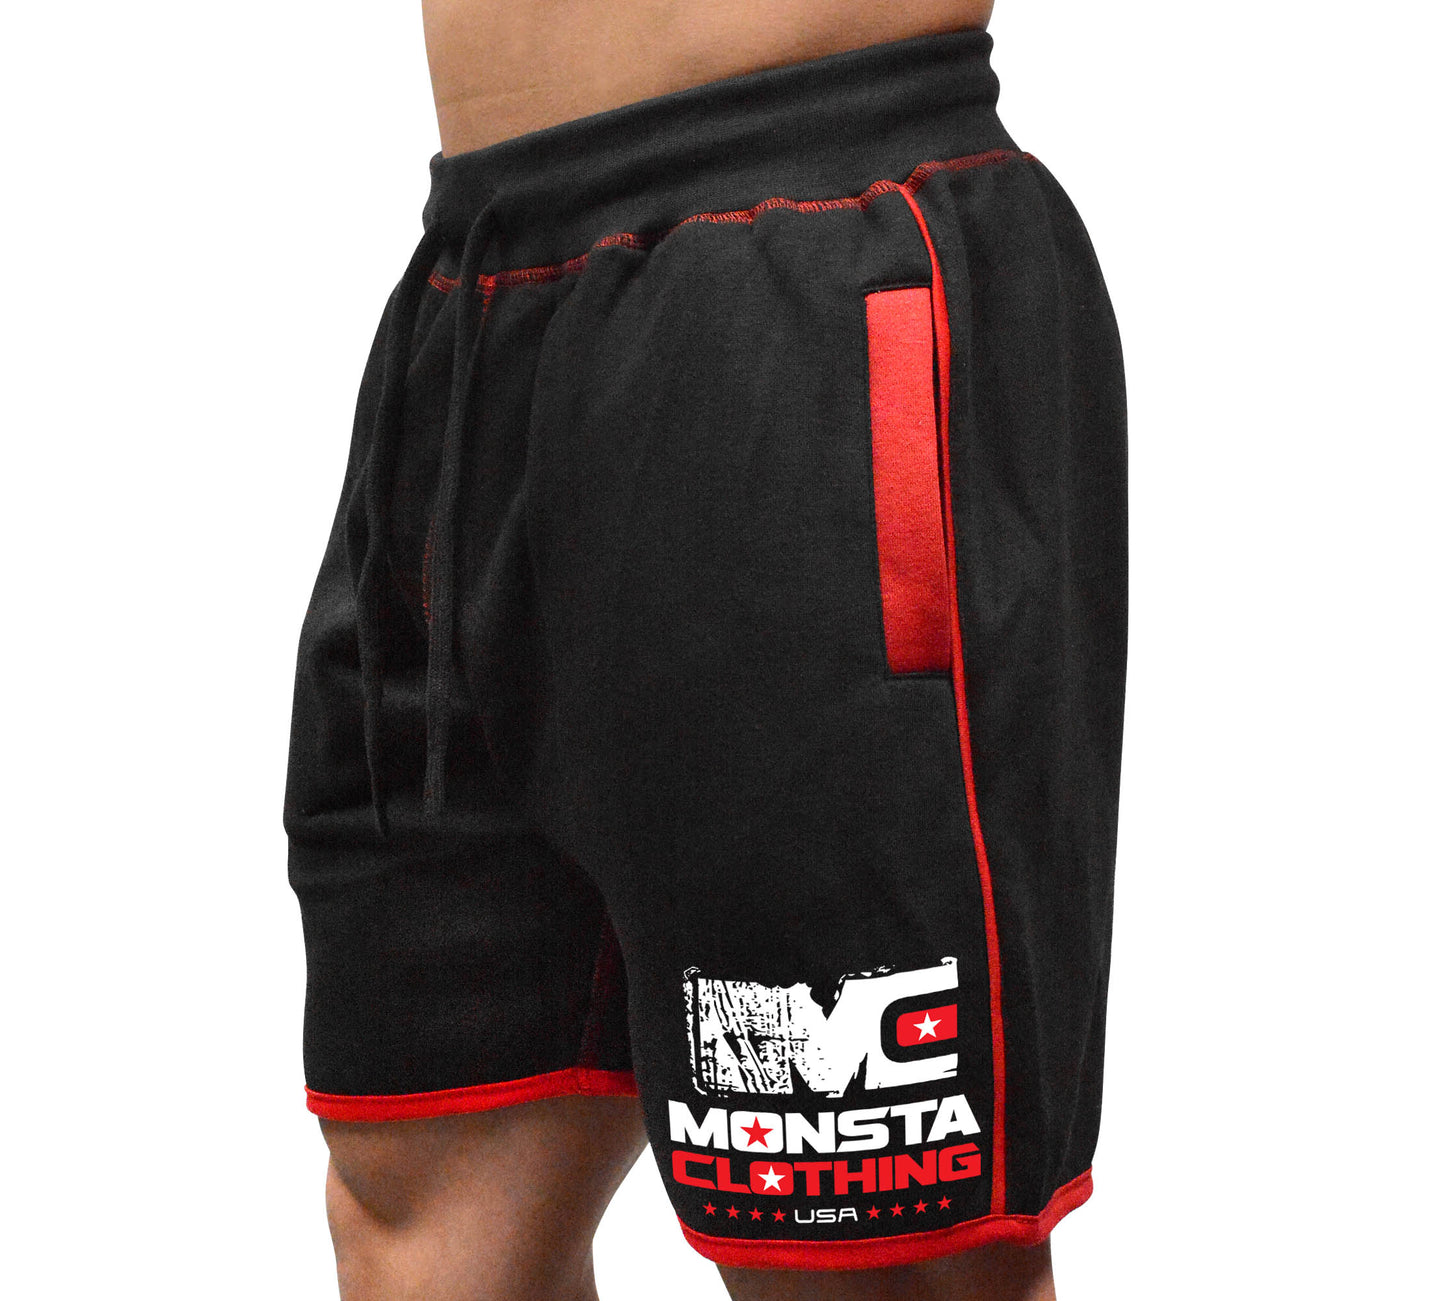 Elite Series: CSS MC Monsta (Signature)-136 (White-Red)